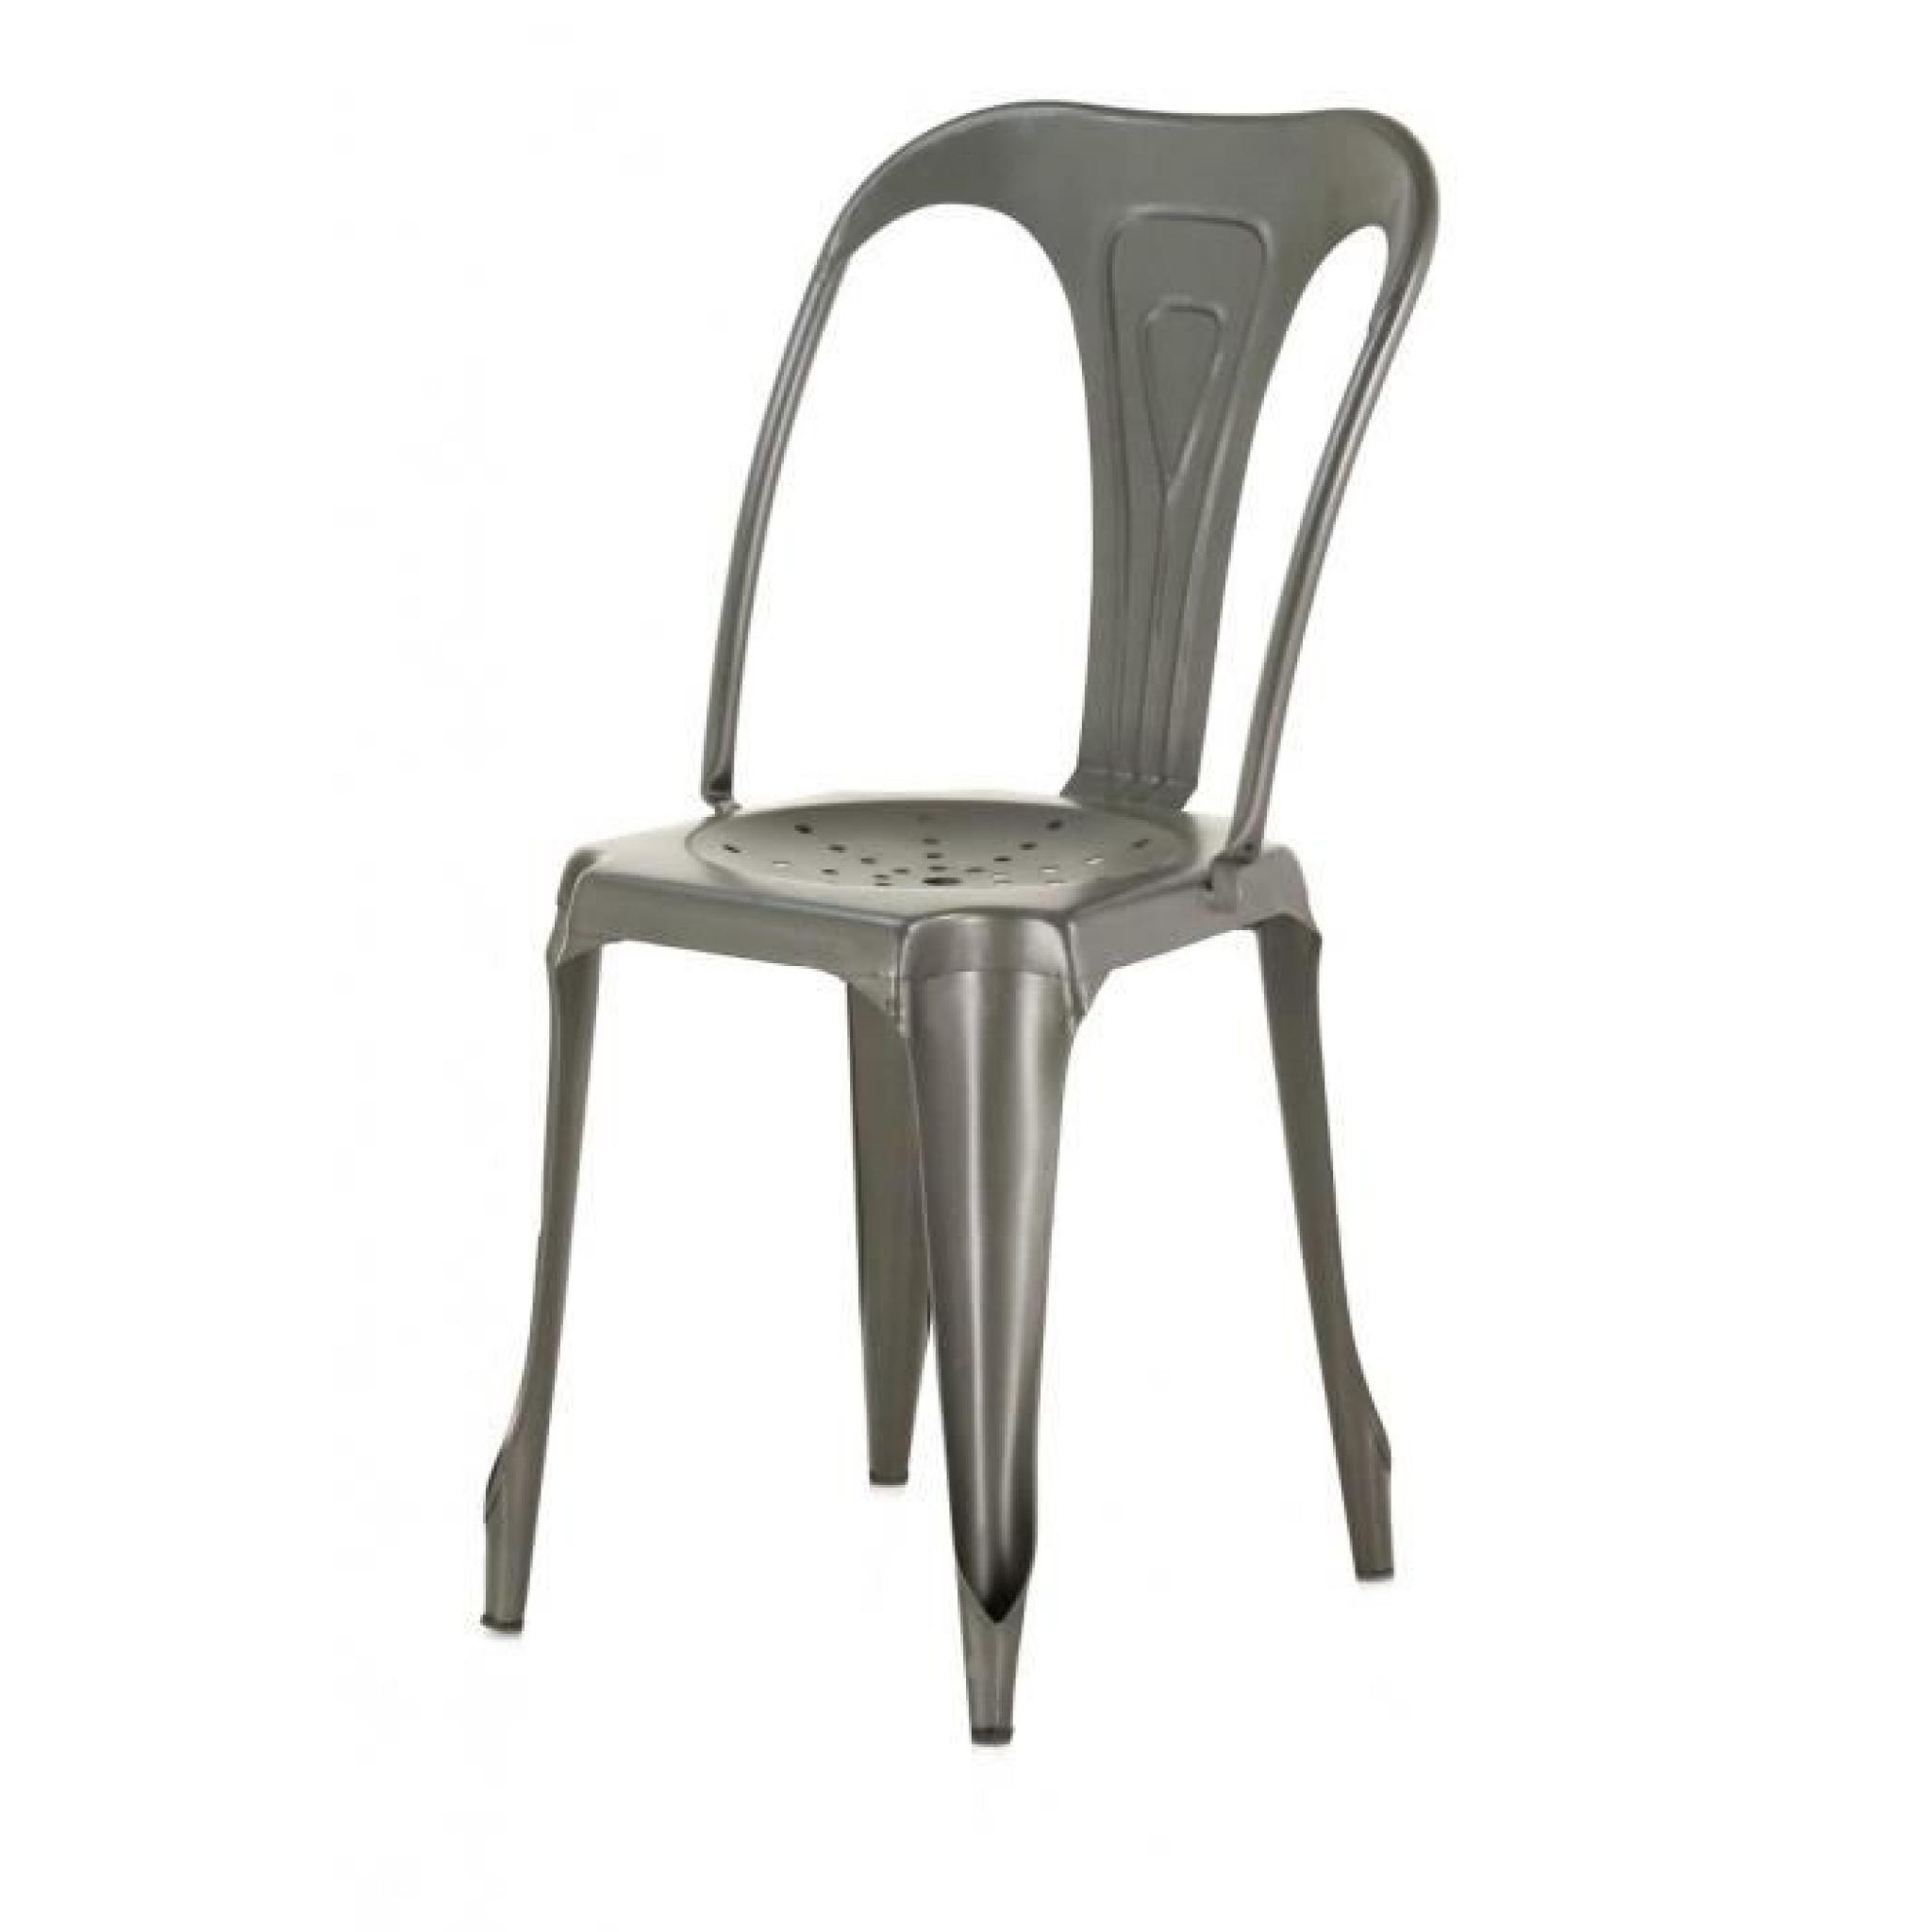 4x Chaise industrielle métal gris foncé Indus - Inwood pas cher